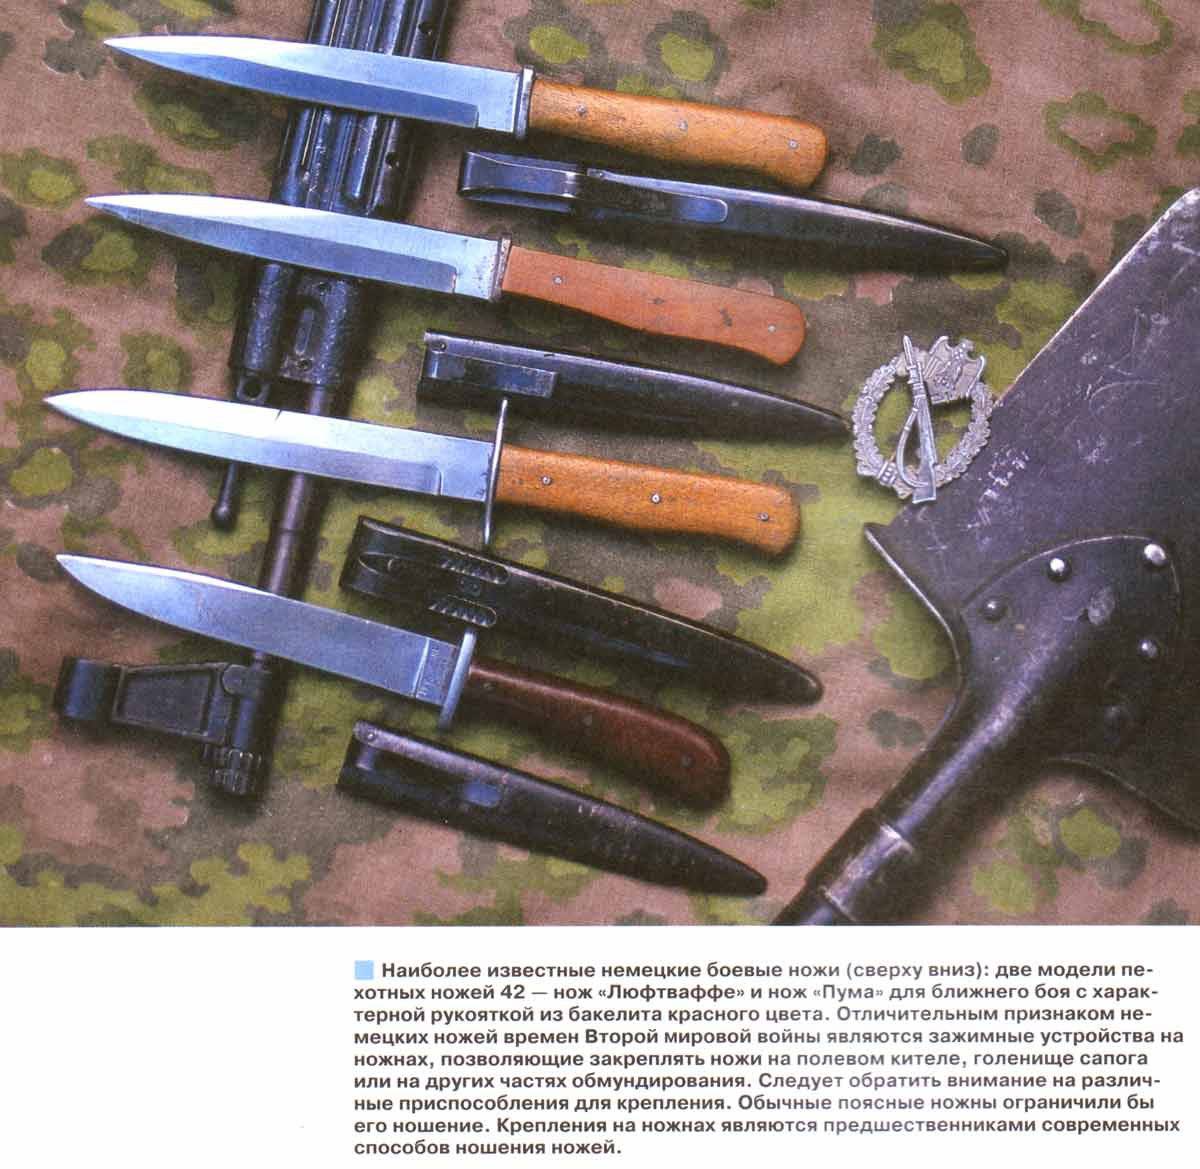 Des couteaux automatiques et d'autres armes illégales vendus sur